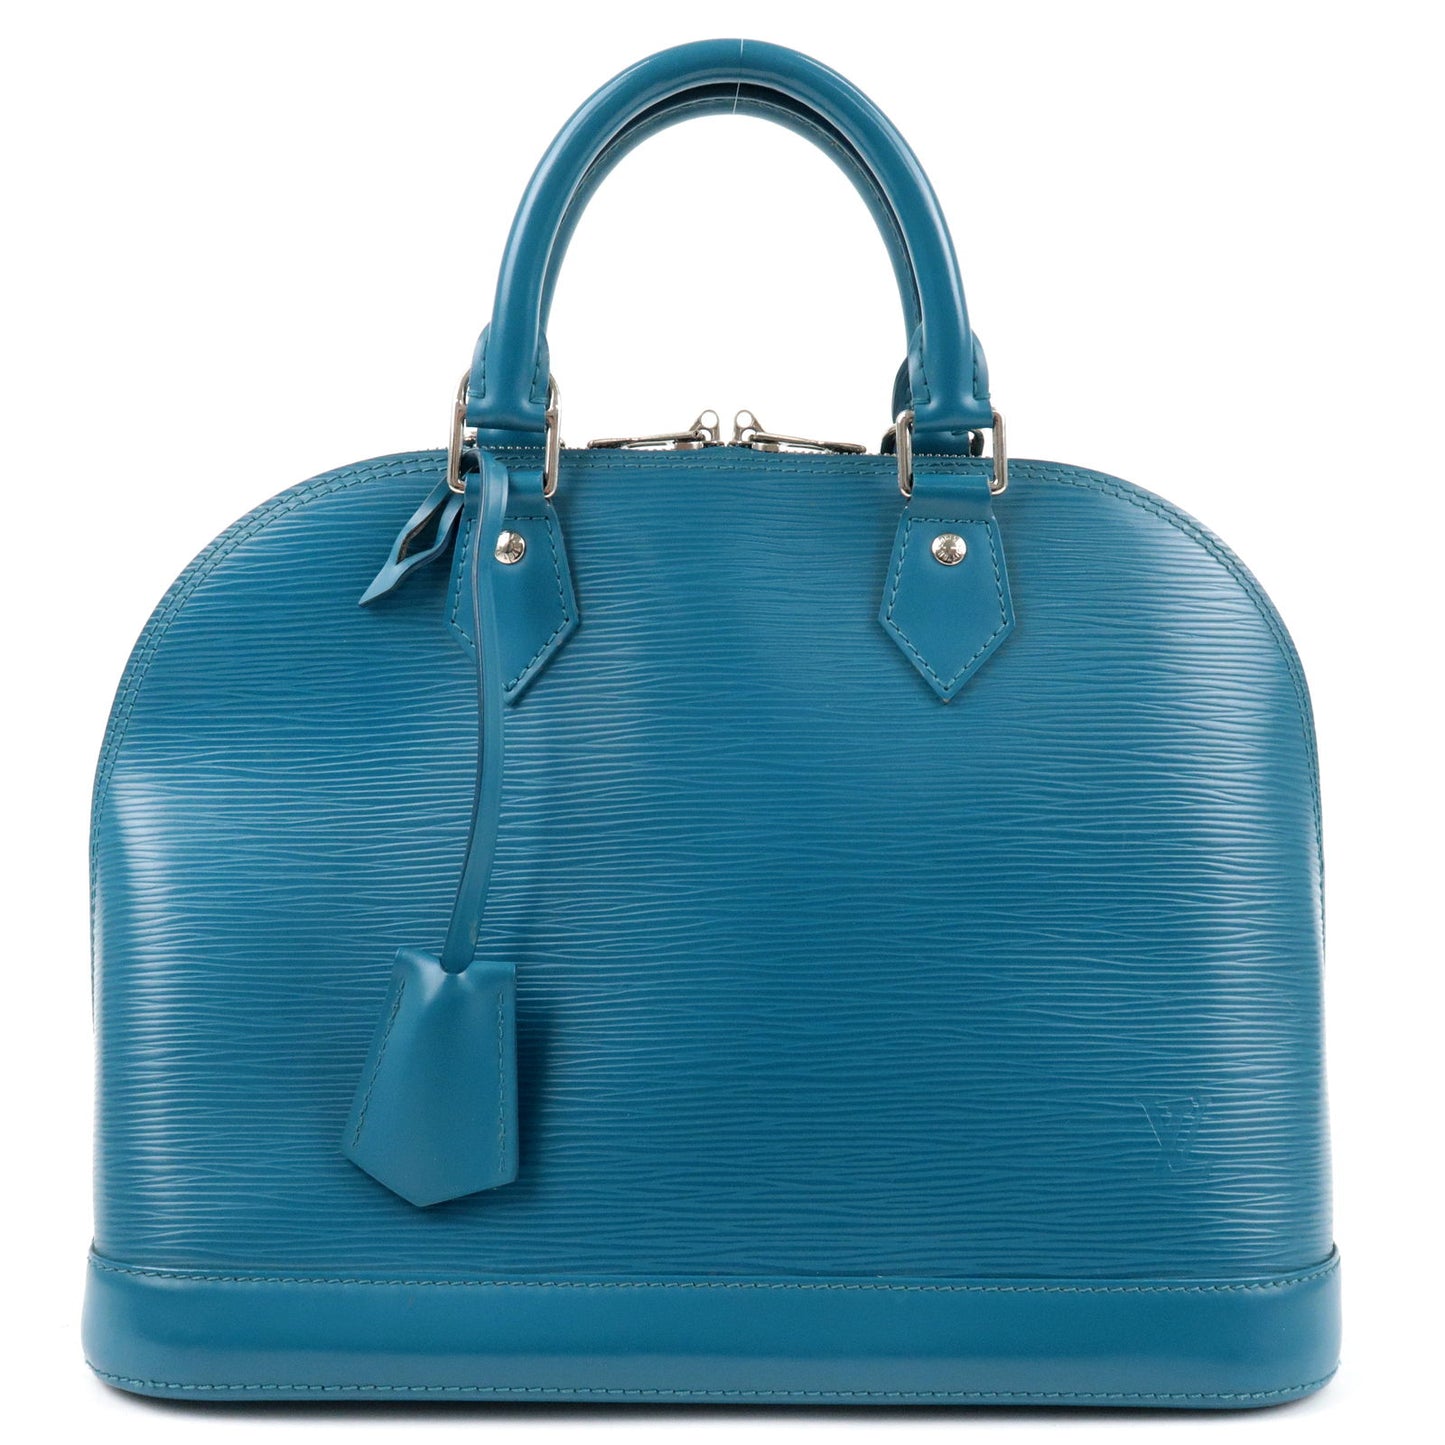 Louis-Vuitton-Epi-Alma-PM-Hand-Bag-Cyan-Blue-M40624